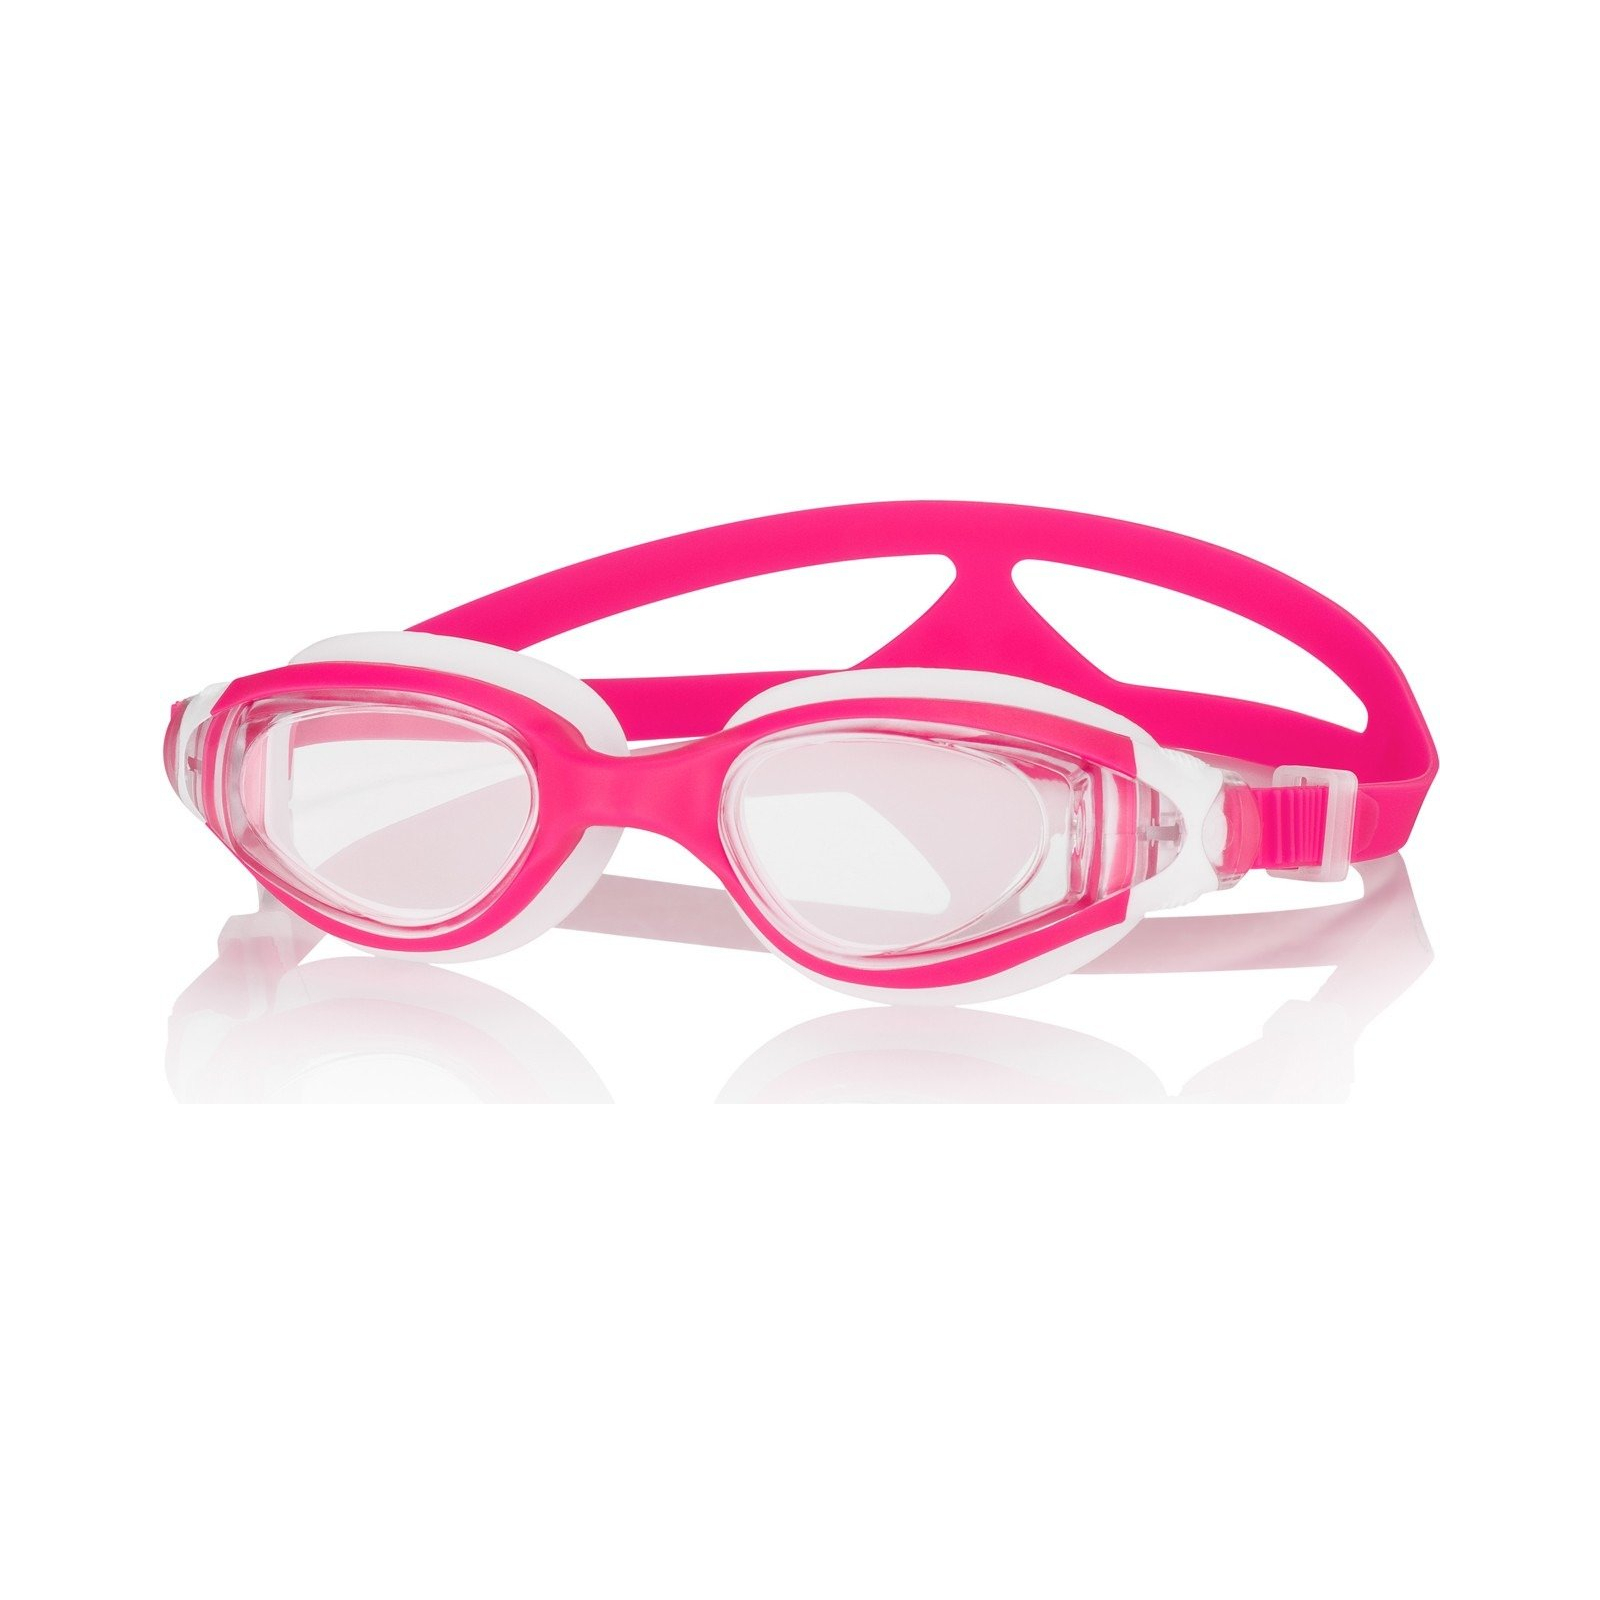 Очки для плавания Aqua Speed Ceto 043-03 5847 рожевий/білий OSFM (5908217658470)